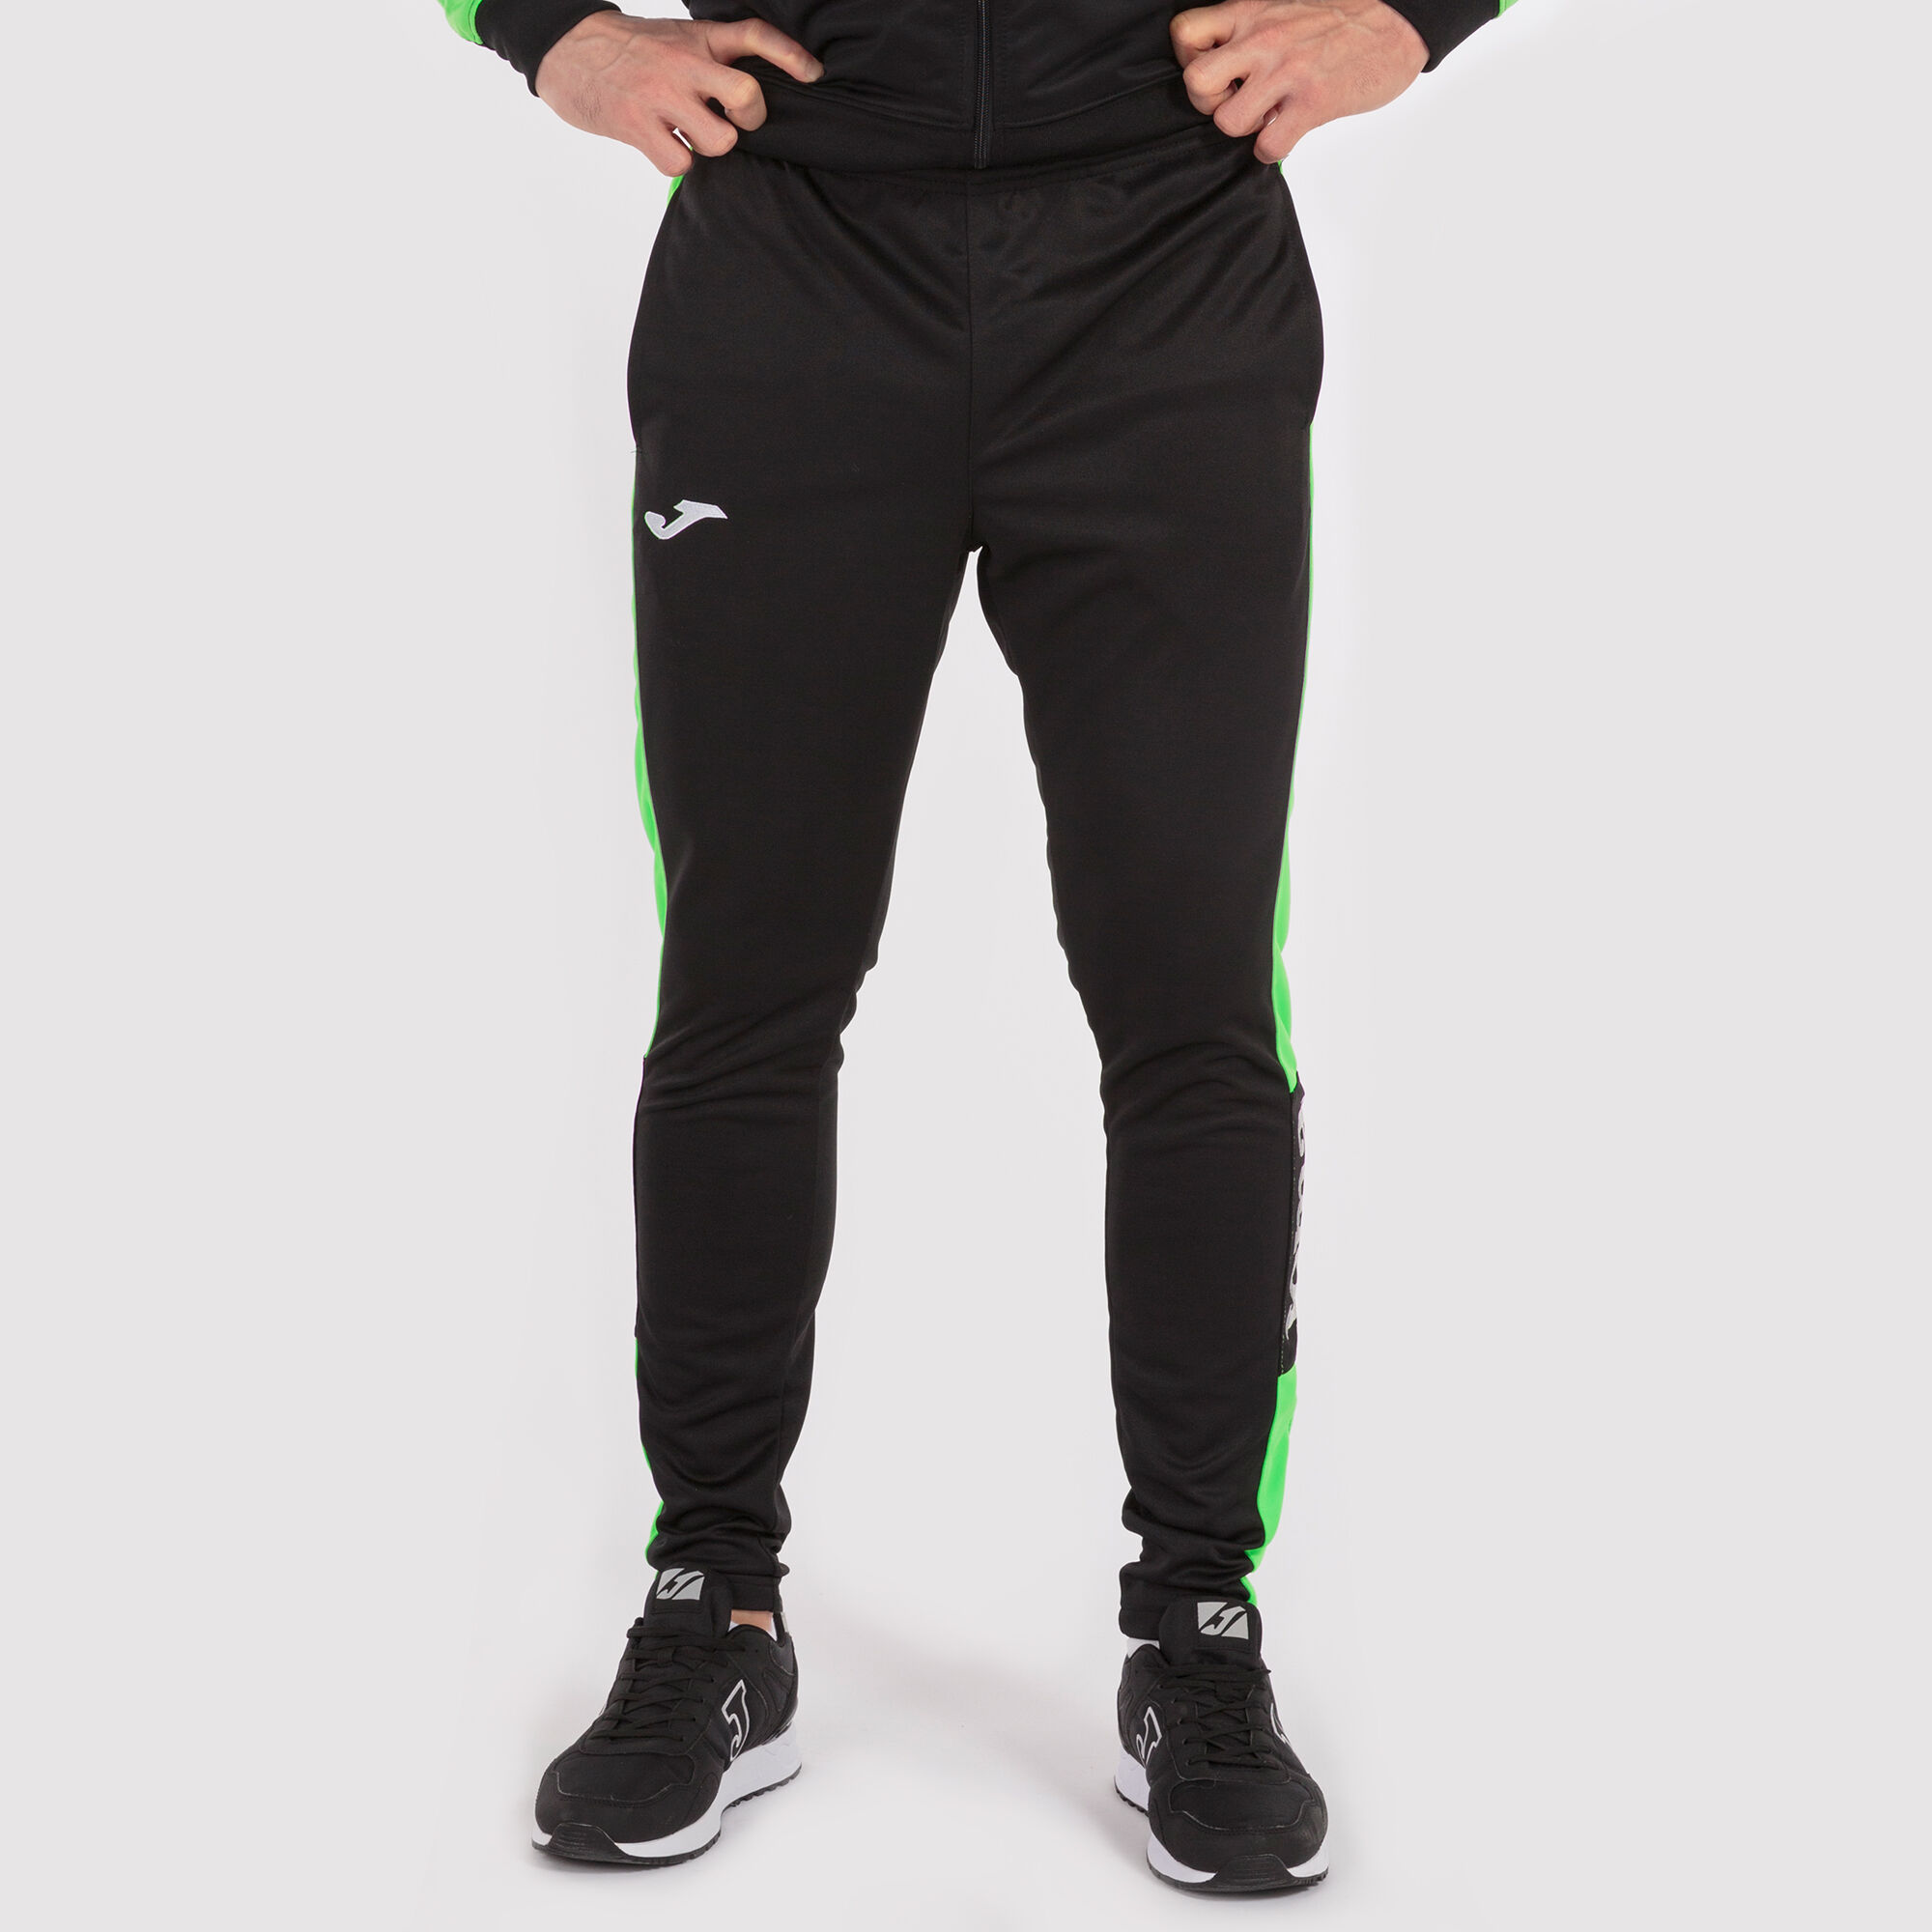 Calça comprida homem Championship IV preto verde fluorescente